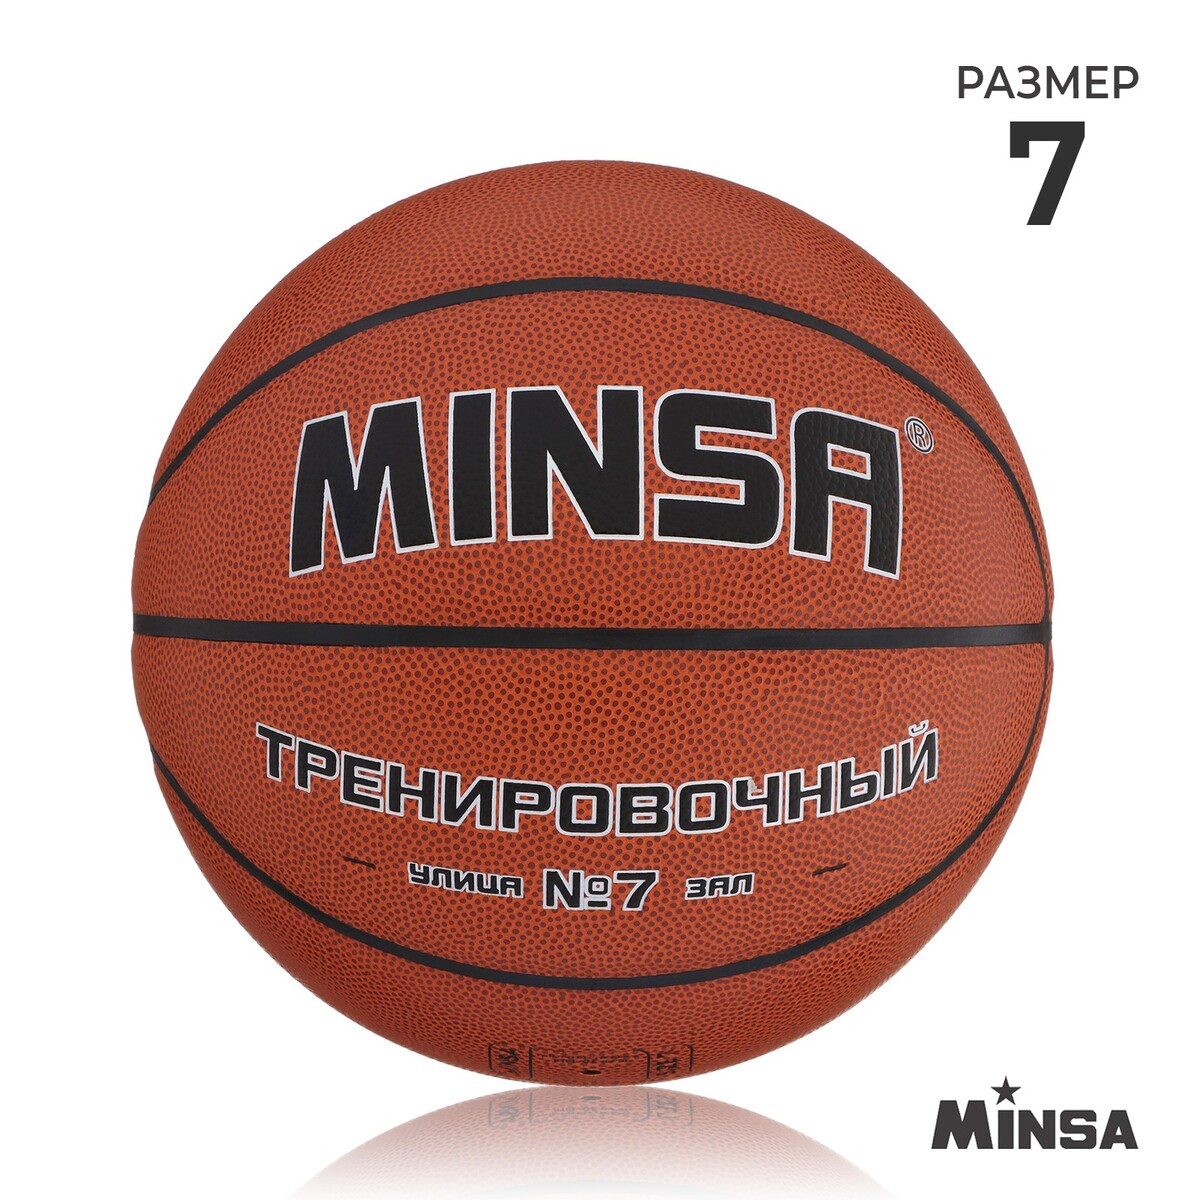 Баскетбольный мяч minsa, тренировочный, pu, клееный, 8 панелей, р. 7 мяч баскетбольный minsa sport пвх клееный 8 панелей р 5